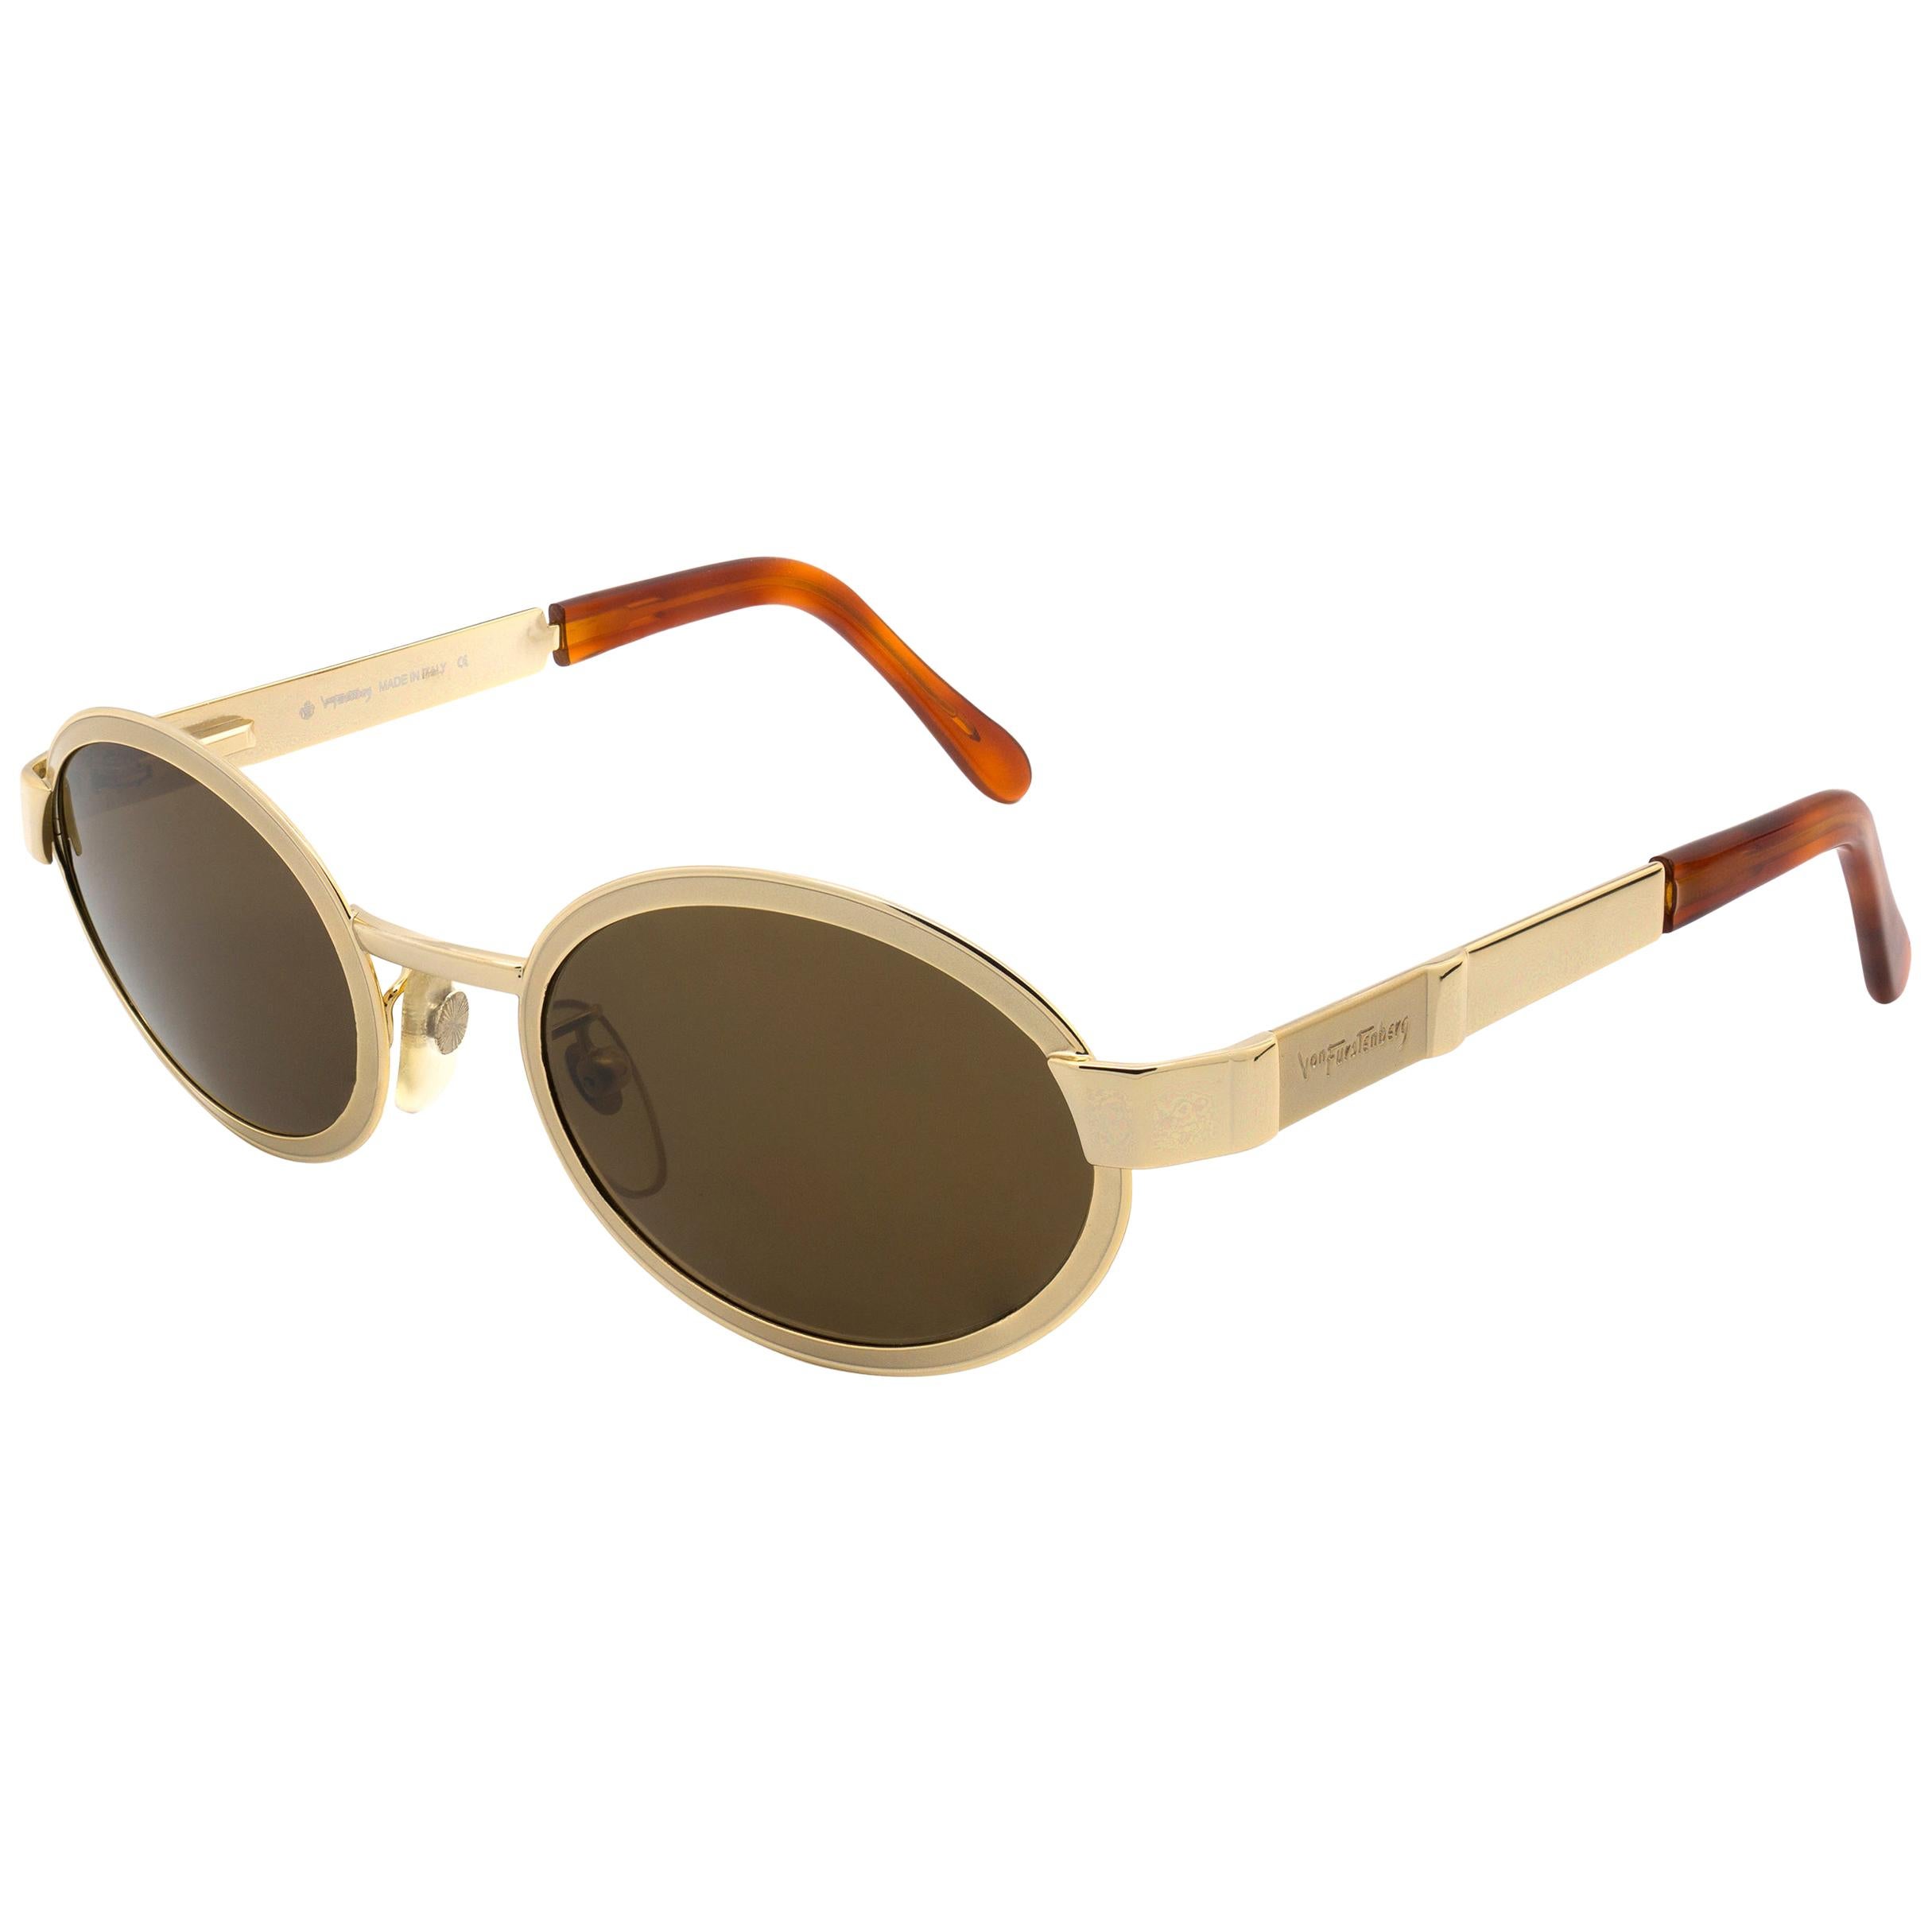 Prince Egon von Furstenberg gold vintage sunglasses For Sale